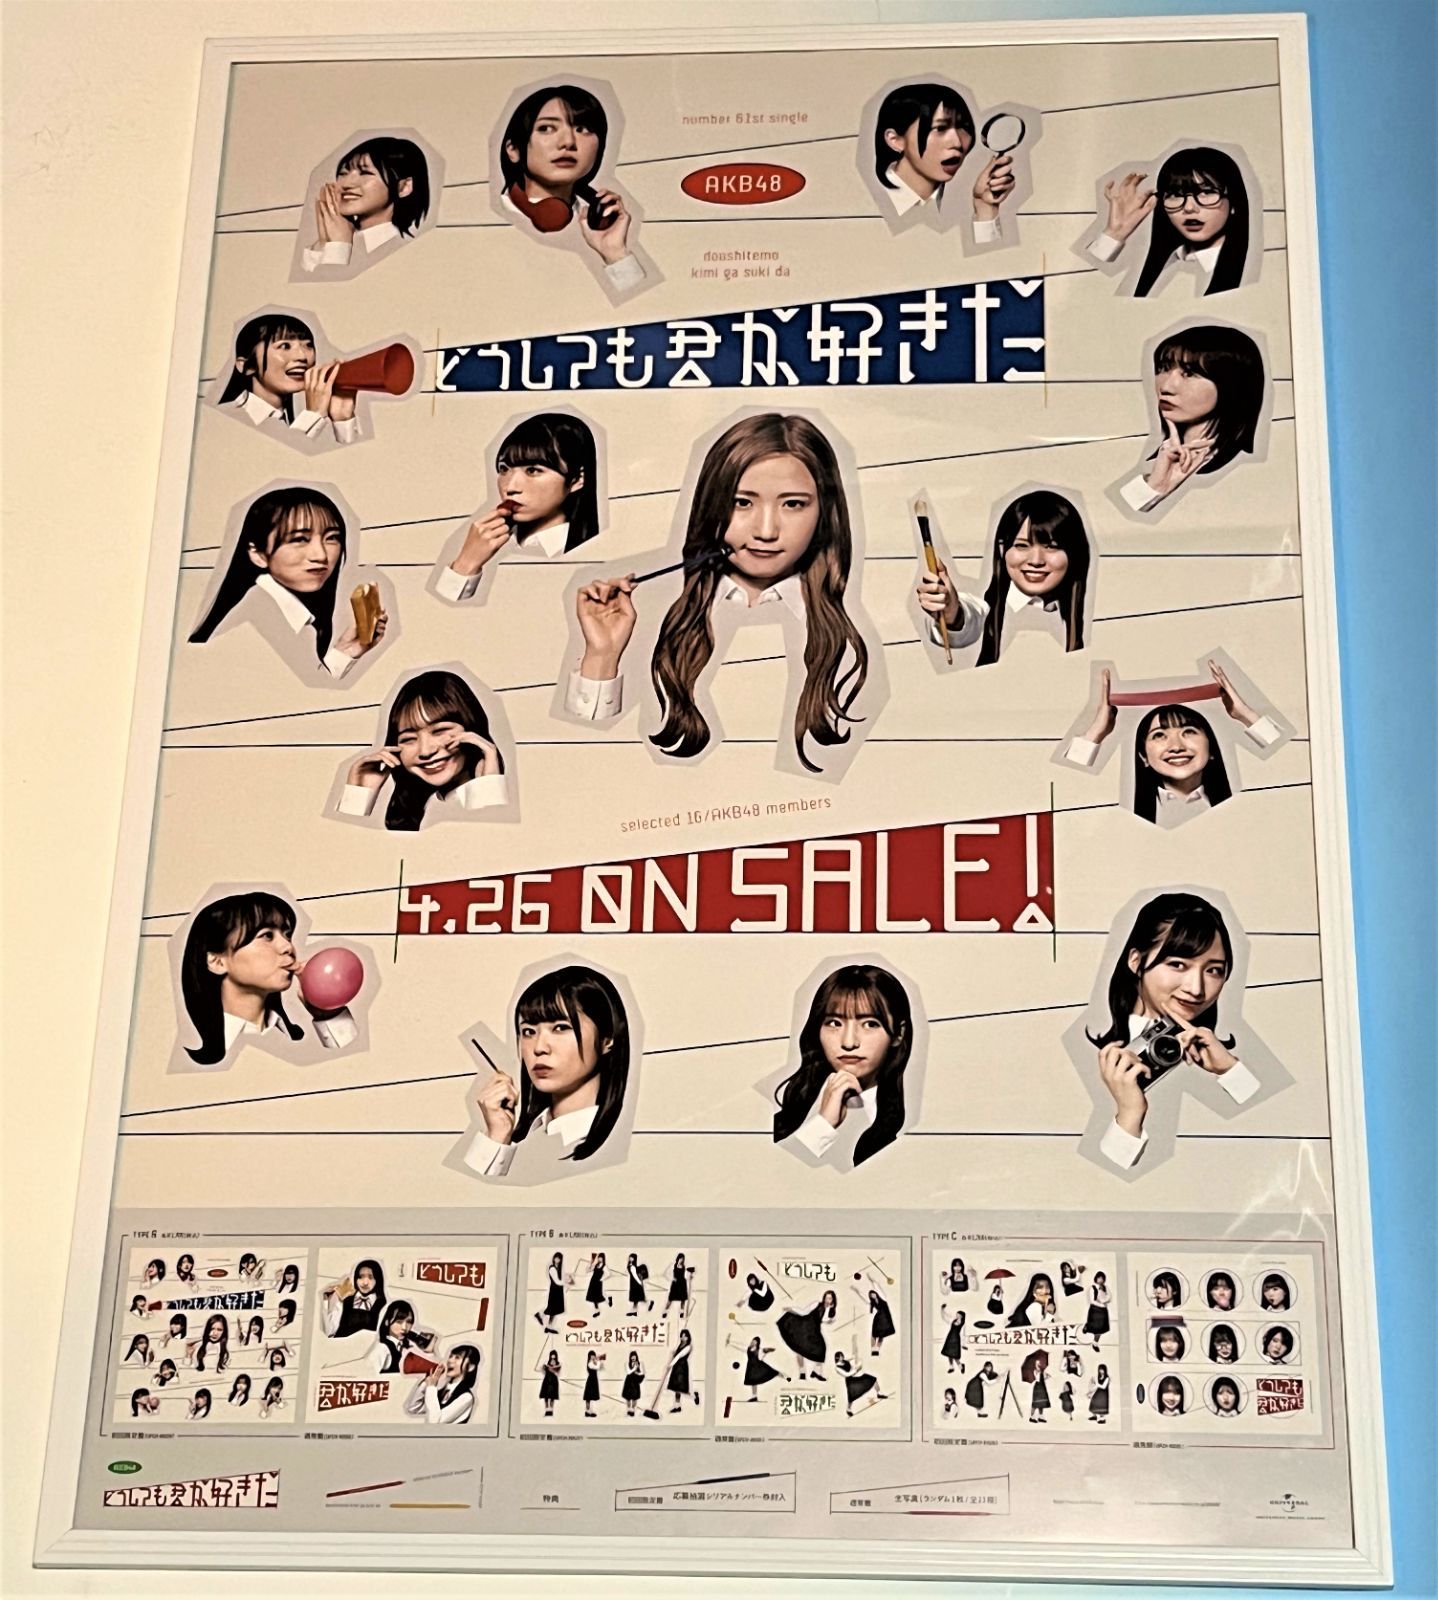 どうしても君が好きだ AKB48 販売用告知B2ポスター